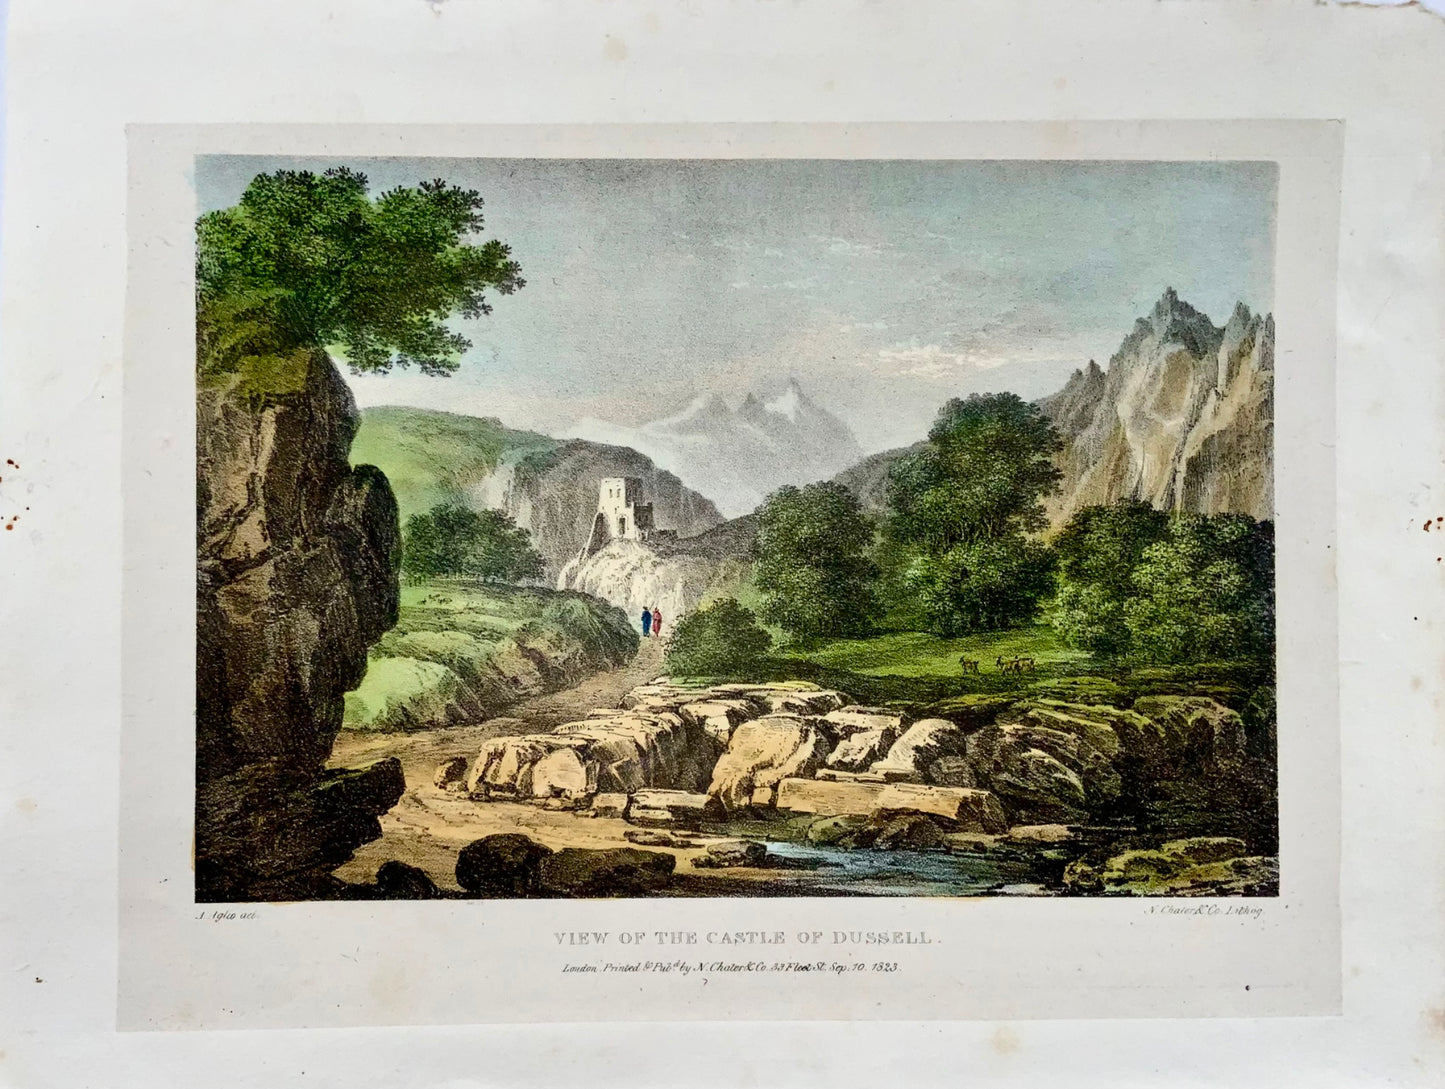 1823 Vue du château de Dussell, Allemagne, Agostino Aglio, lithographie, paysage